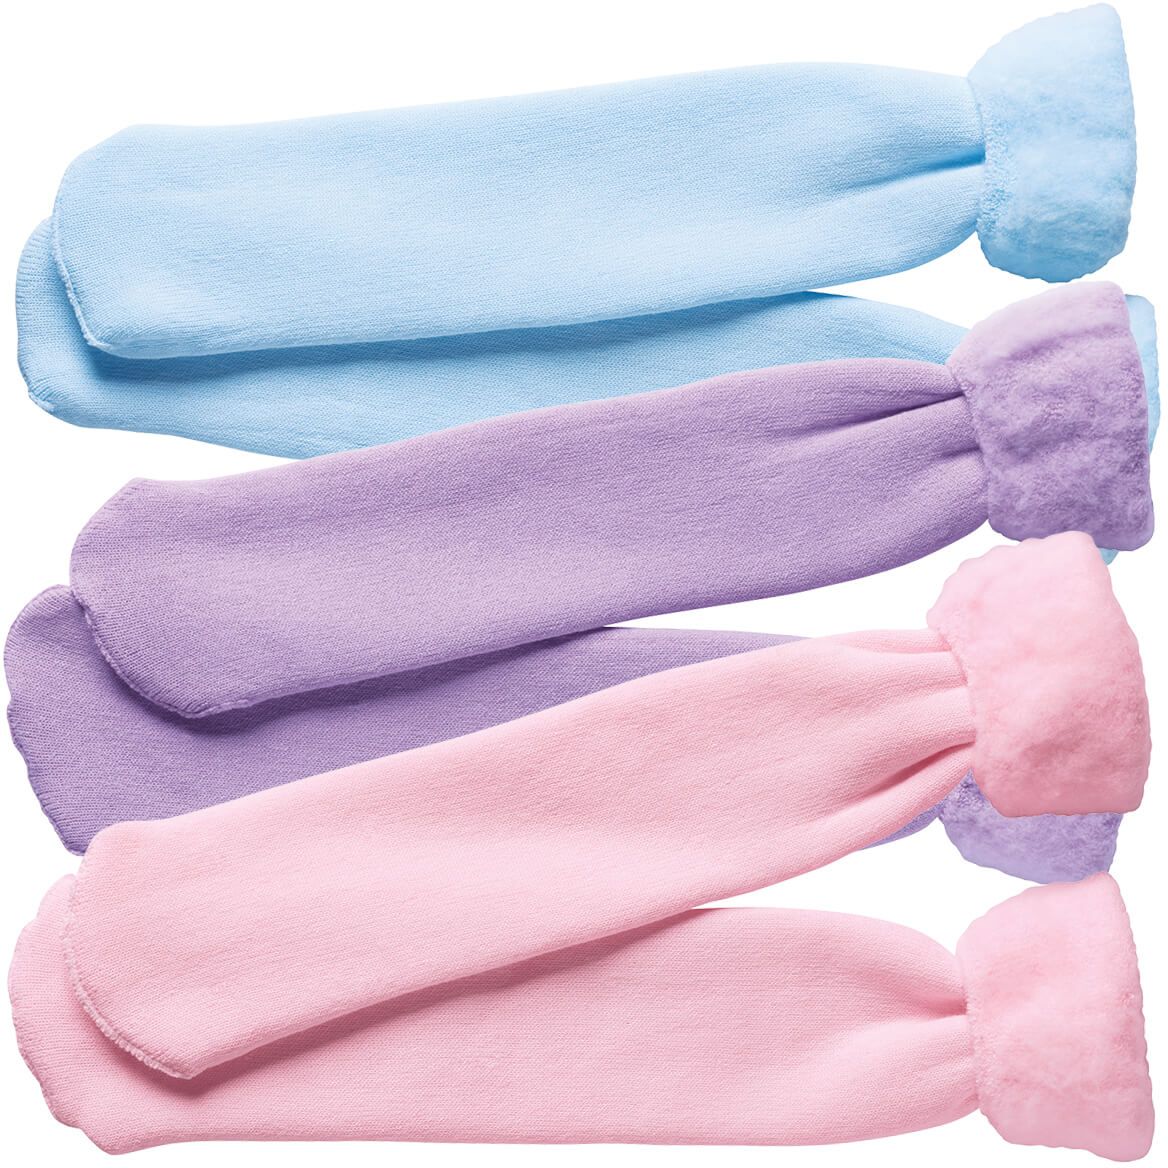 Bed Socks, 3 Pair Pack + '-' + 351217